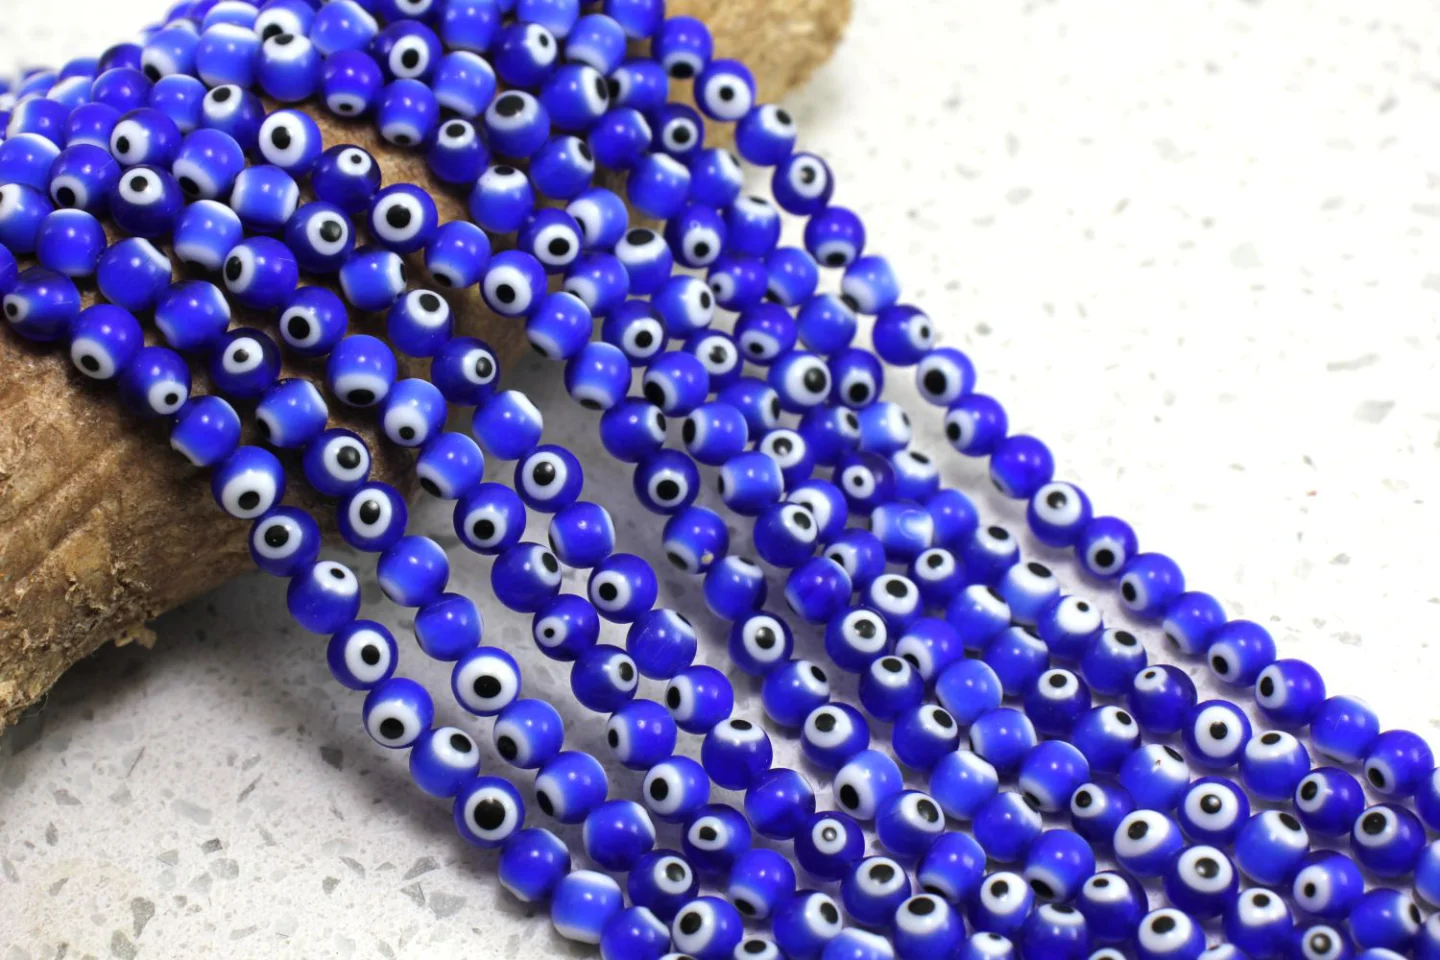 6mm-navy-blue-glass-evil-eye-beads.